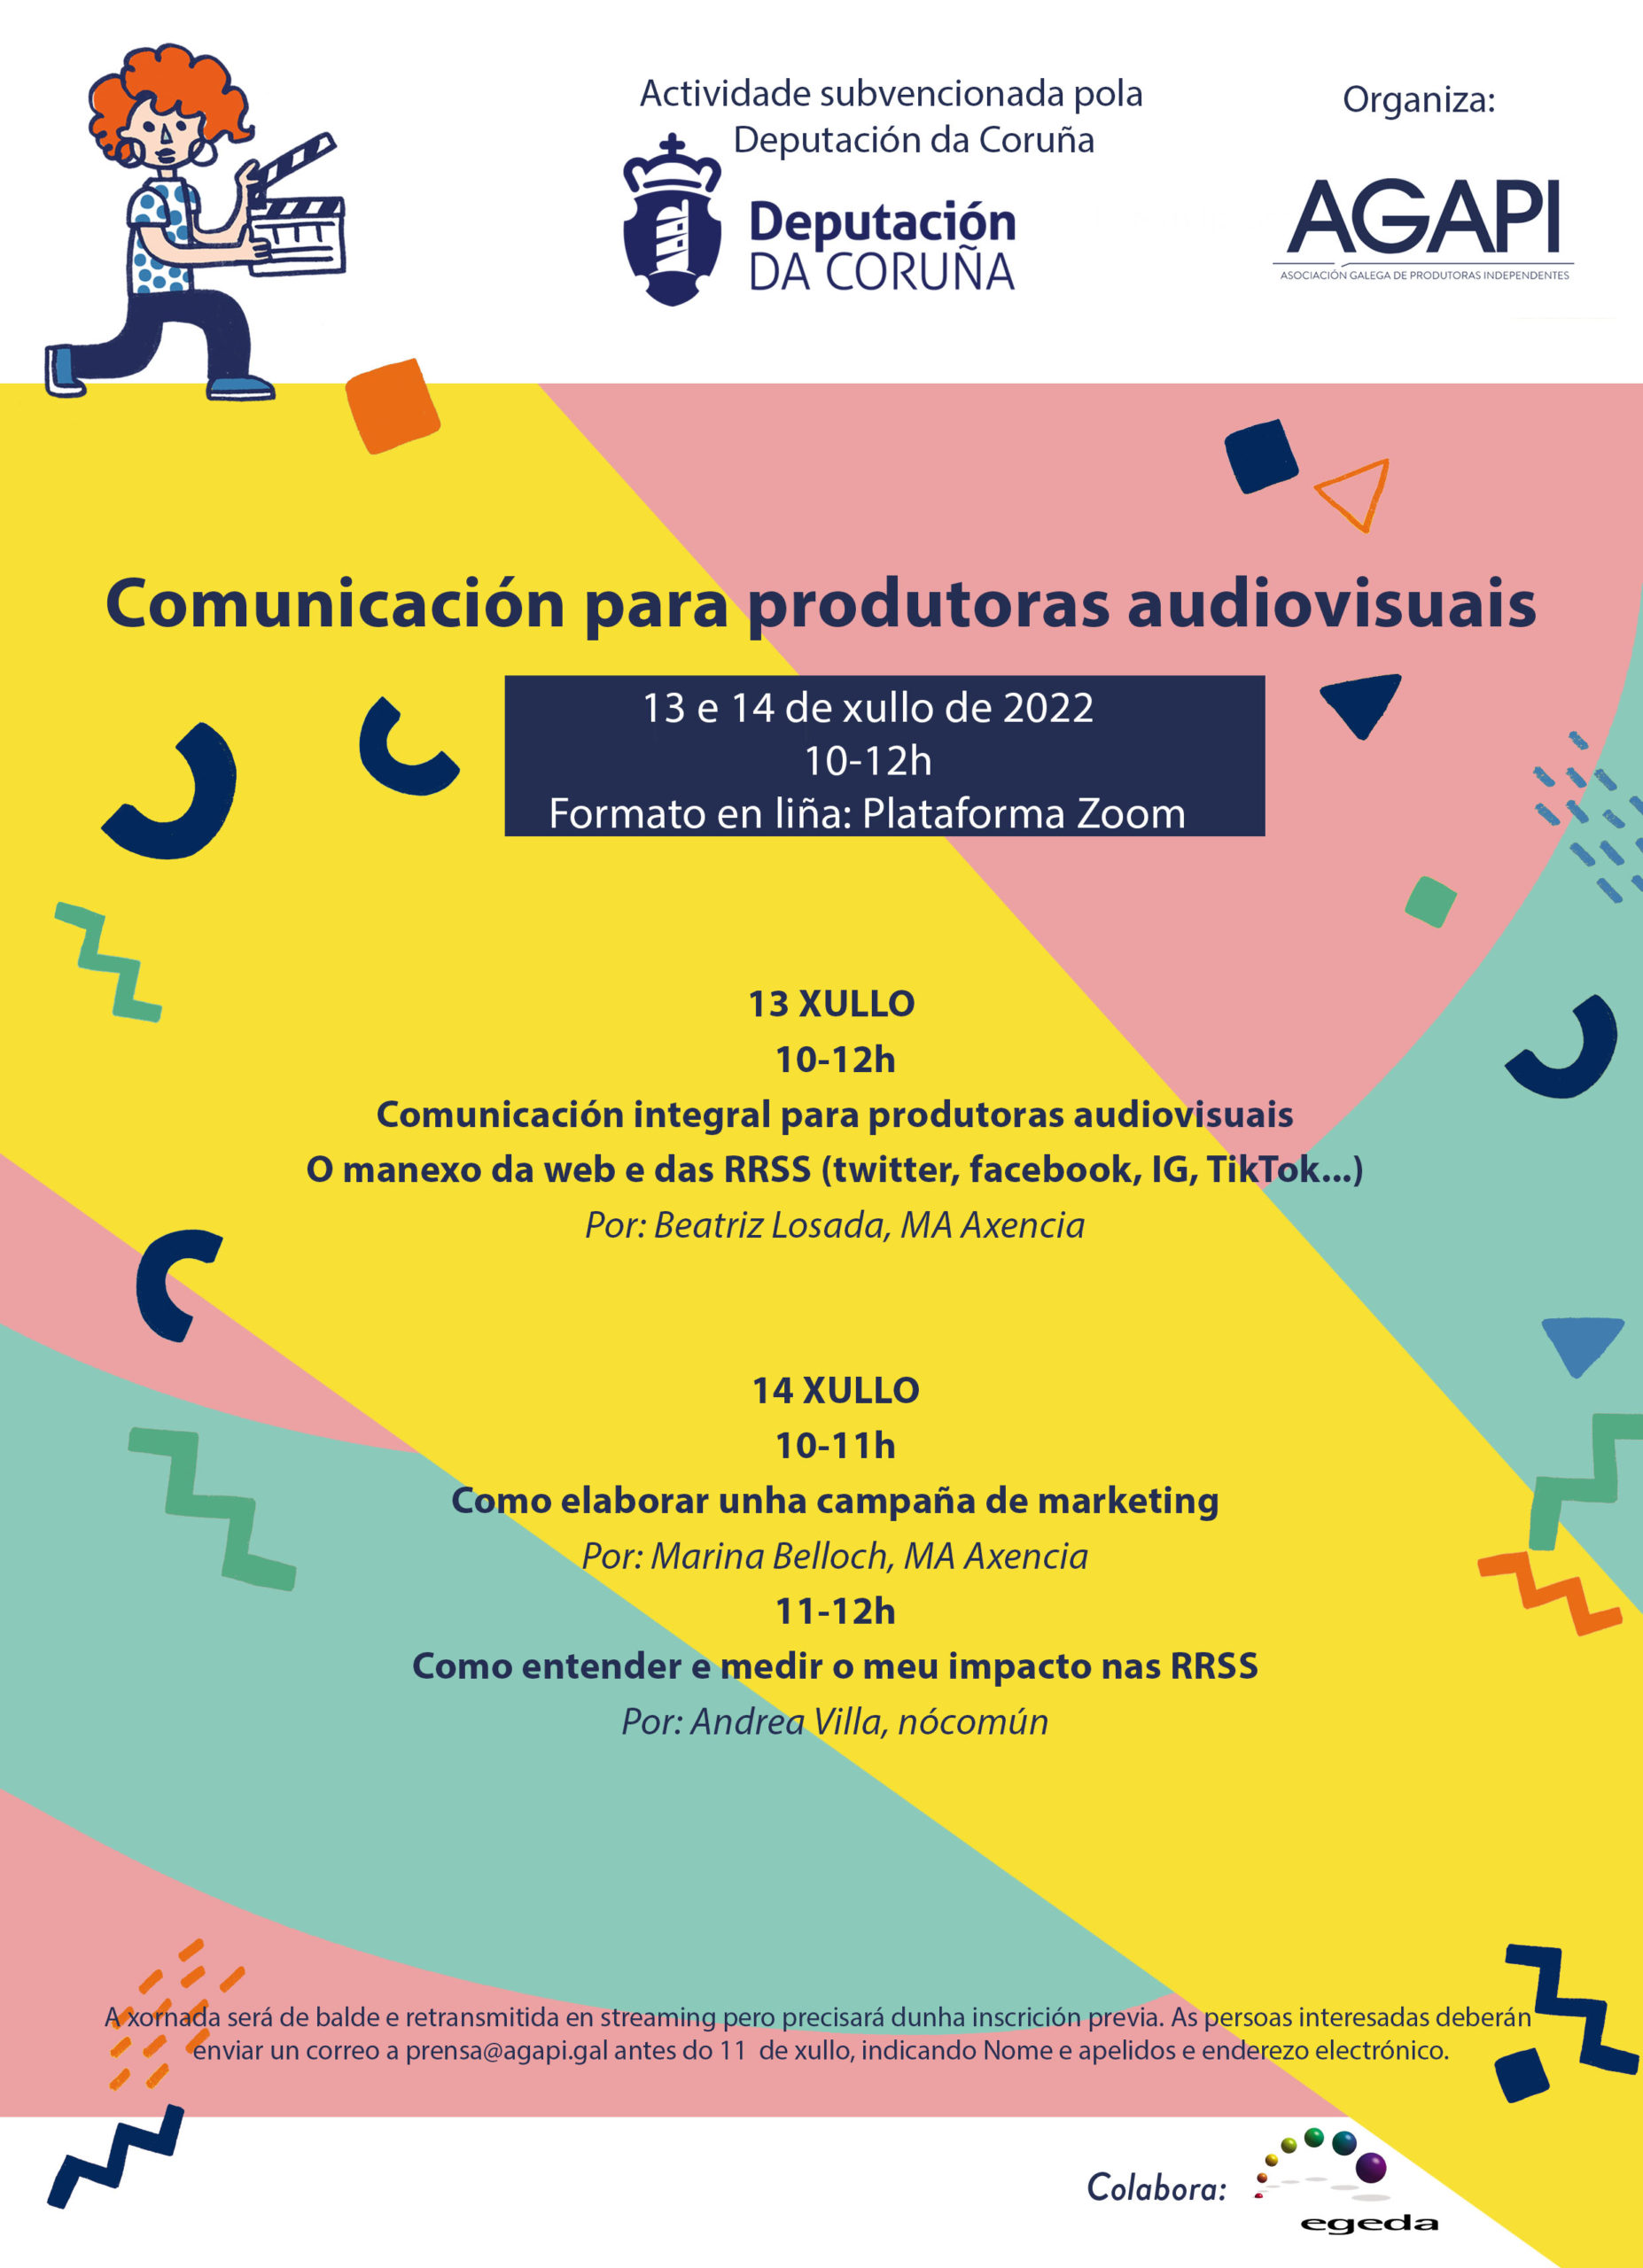 Agapi organiza unhas novas xornadas formativas sobre ‘Comunicación para produtoras audiovisuais’, coa subvención da Deputación da Coruña